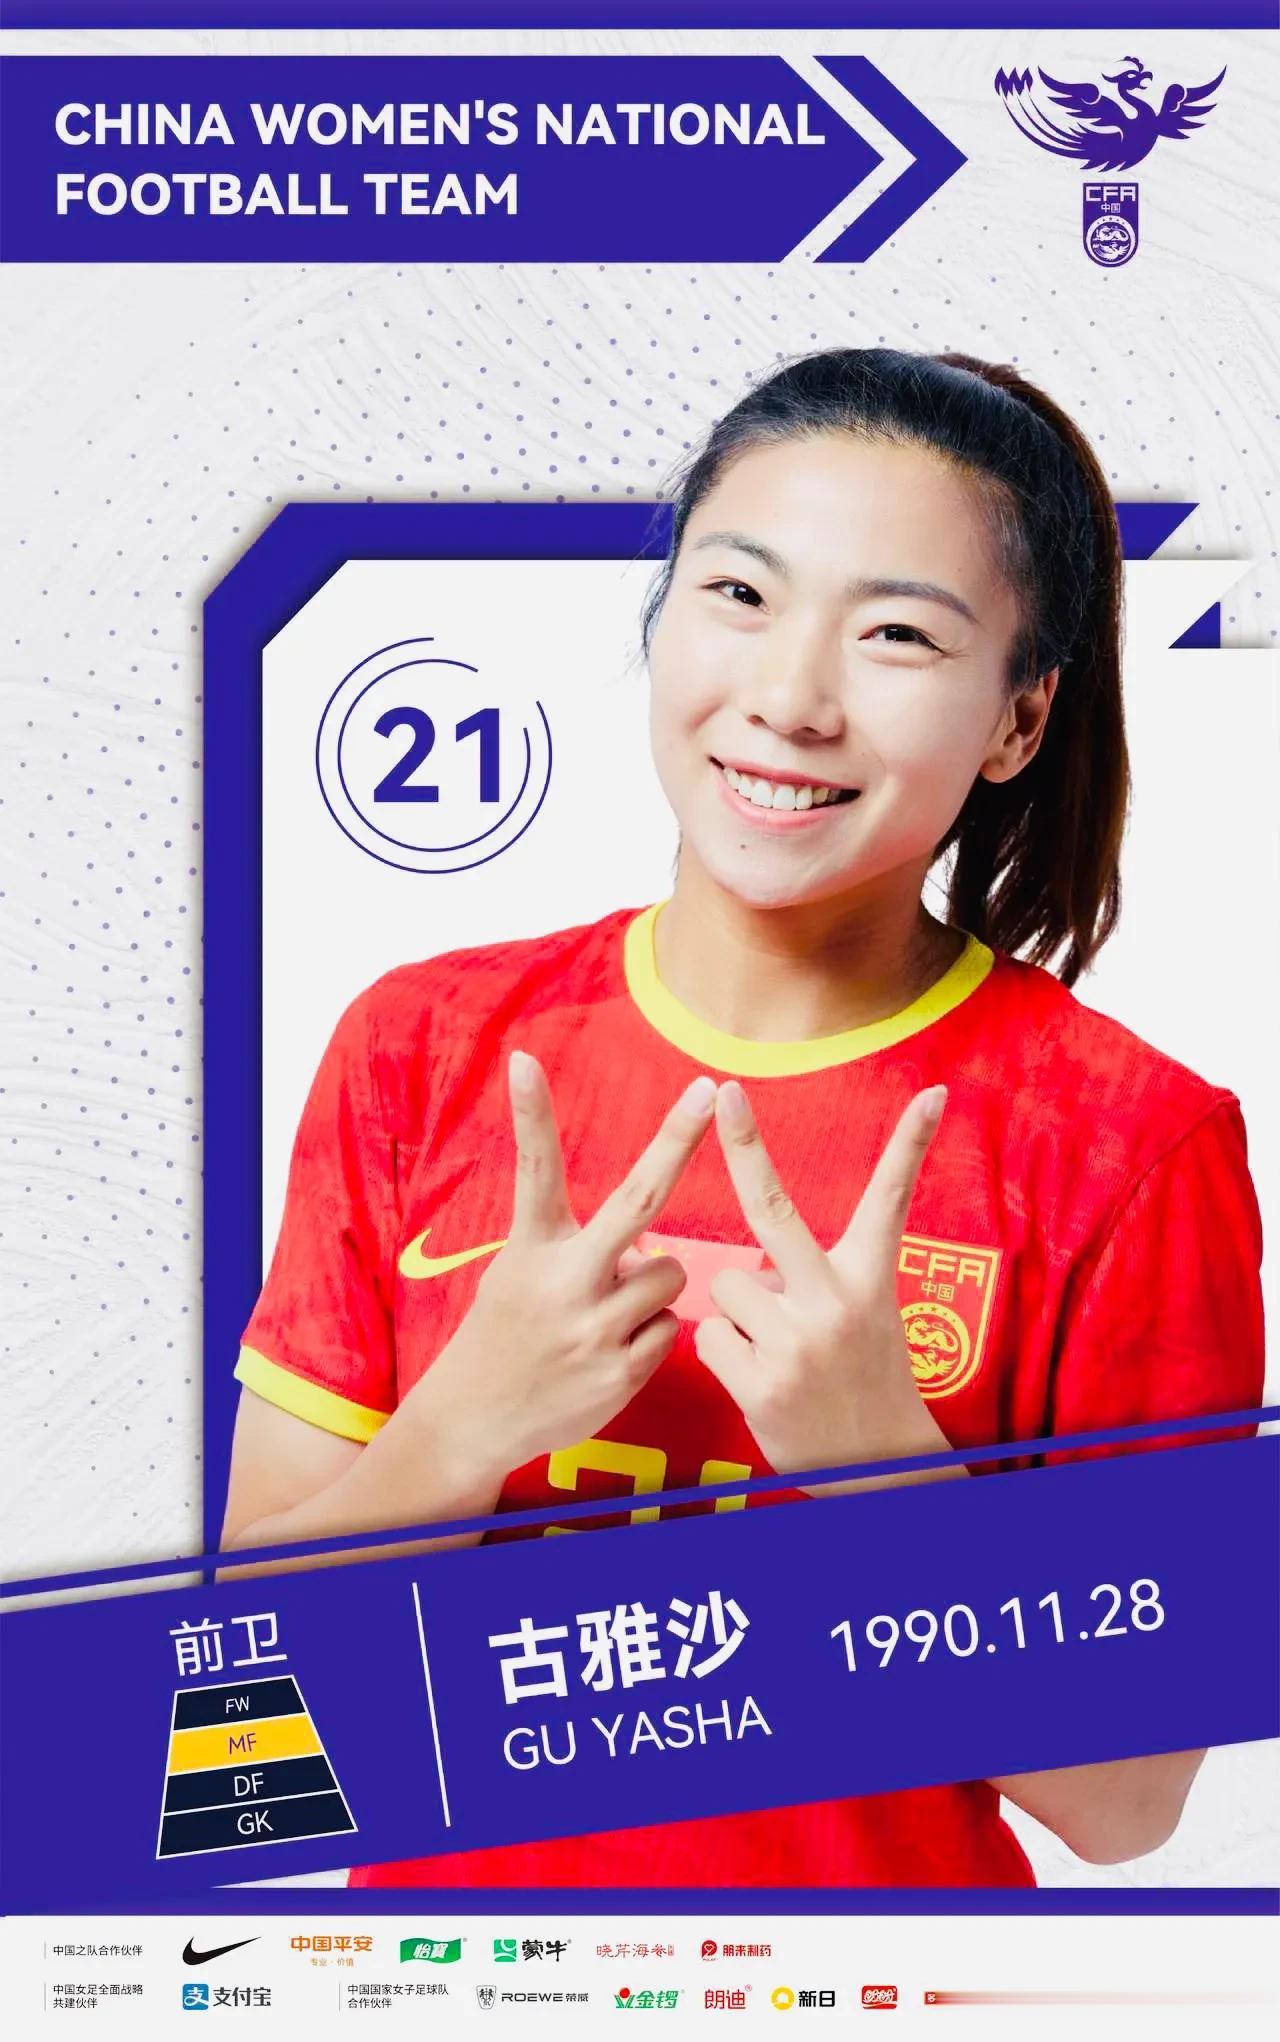 本届女足世界杯很可能是中国女足姑娘张睿、王珊珊、古雅沙、娄佳惠、张馨、高晨的最后(3)